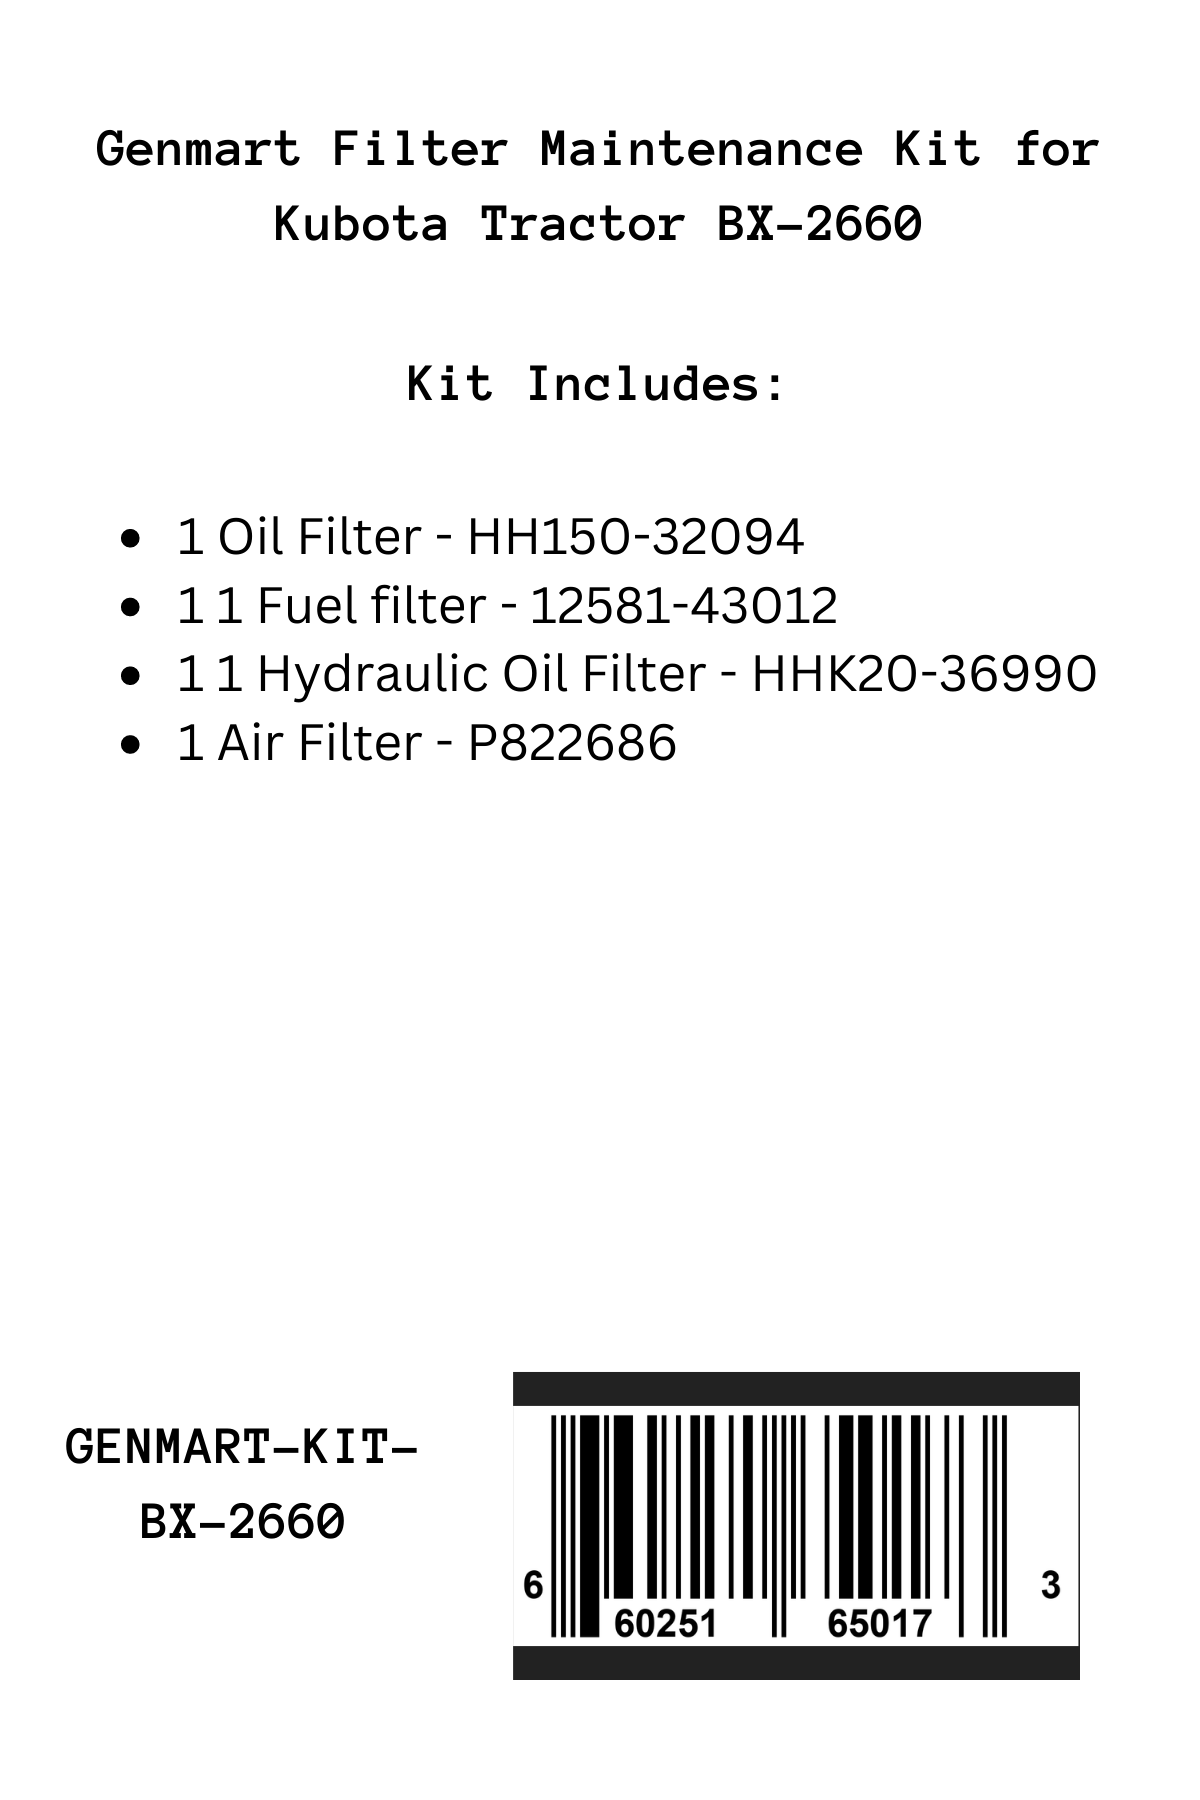 Genmart Maintenance Kit for Kubota Tractor BX-2660